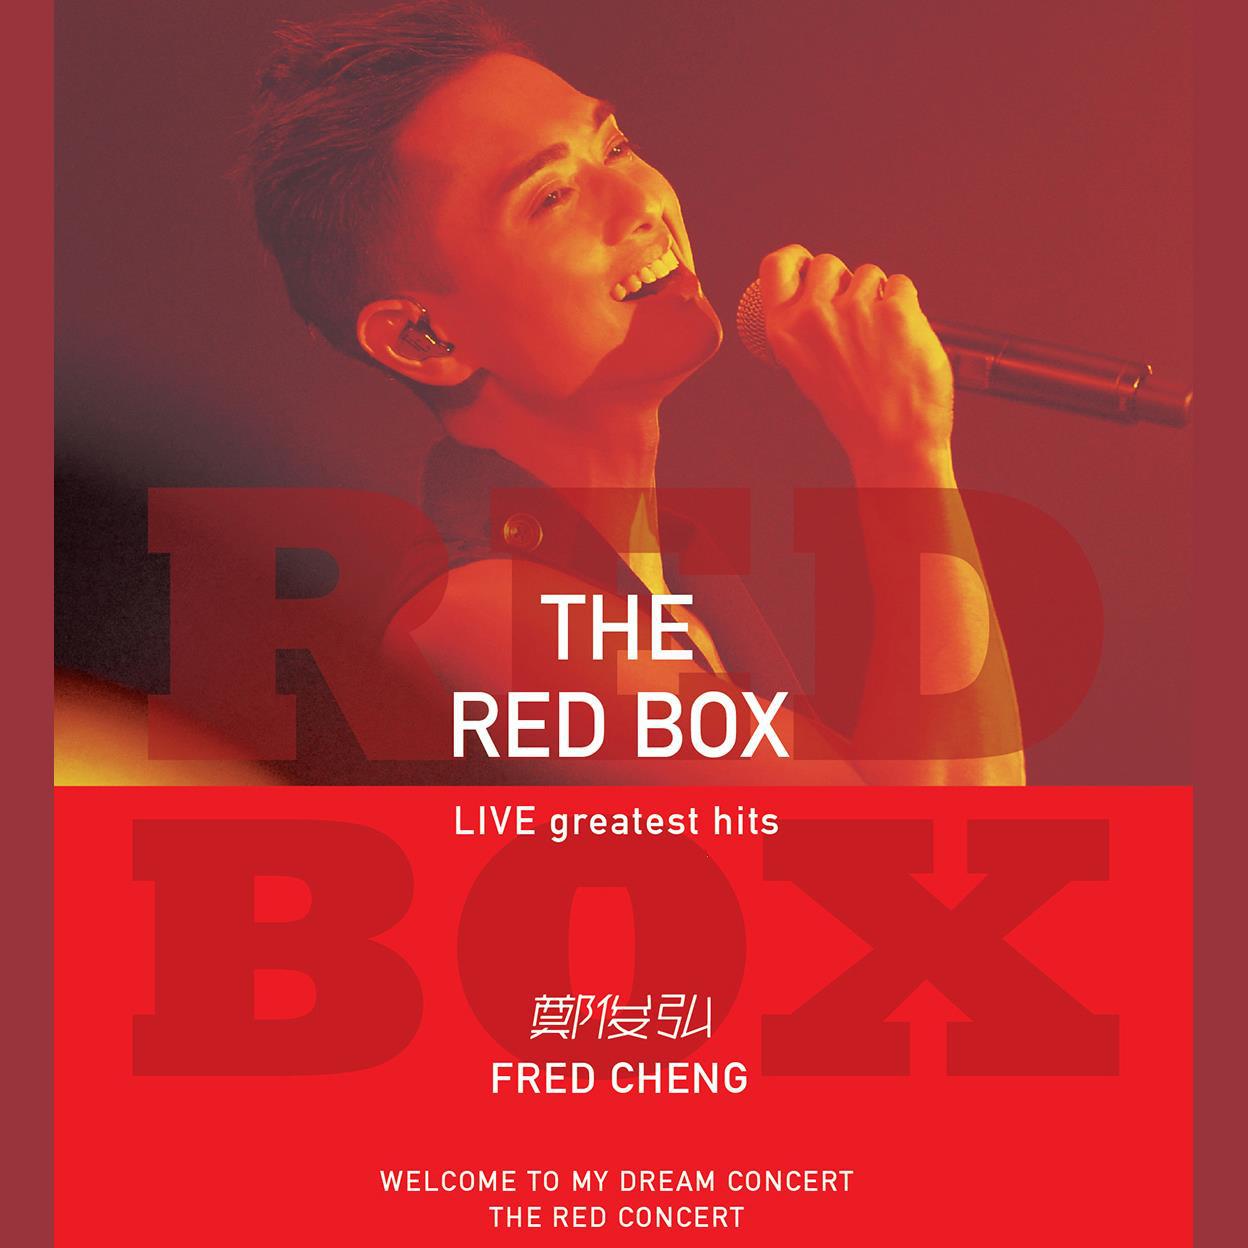 投降吧 (Live)歌词 歌手郑俊弘-专辑The Red Box Live Greatest Hits-单曲《投降吧 (Live)》LRC歌词下载